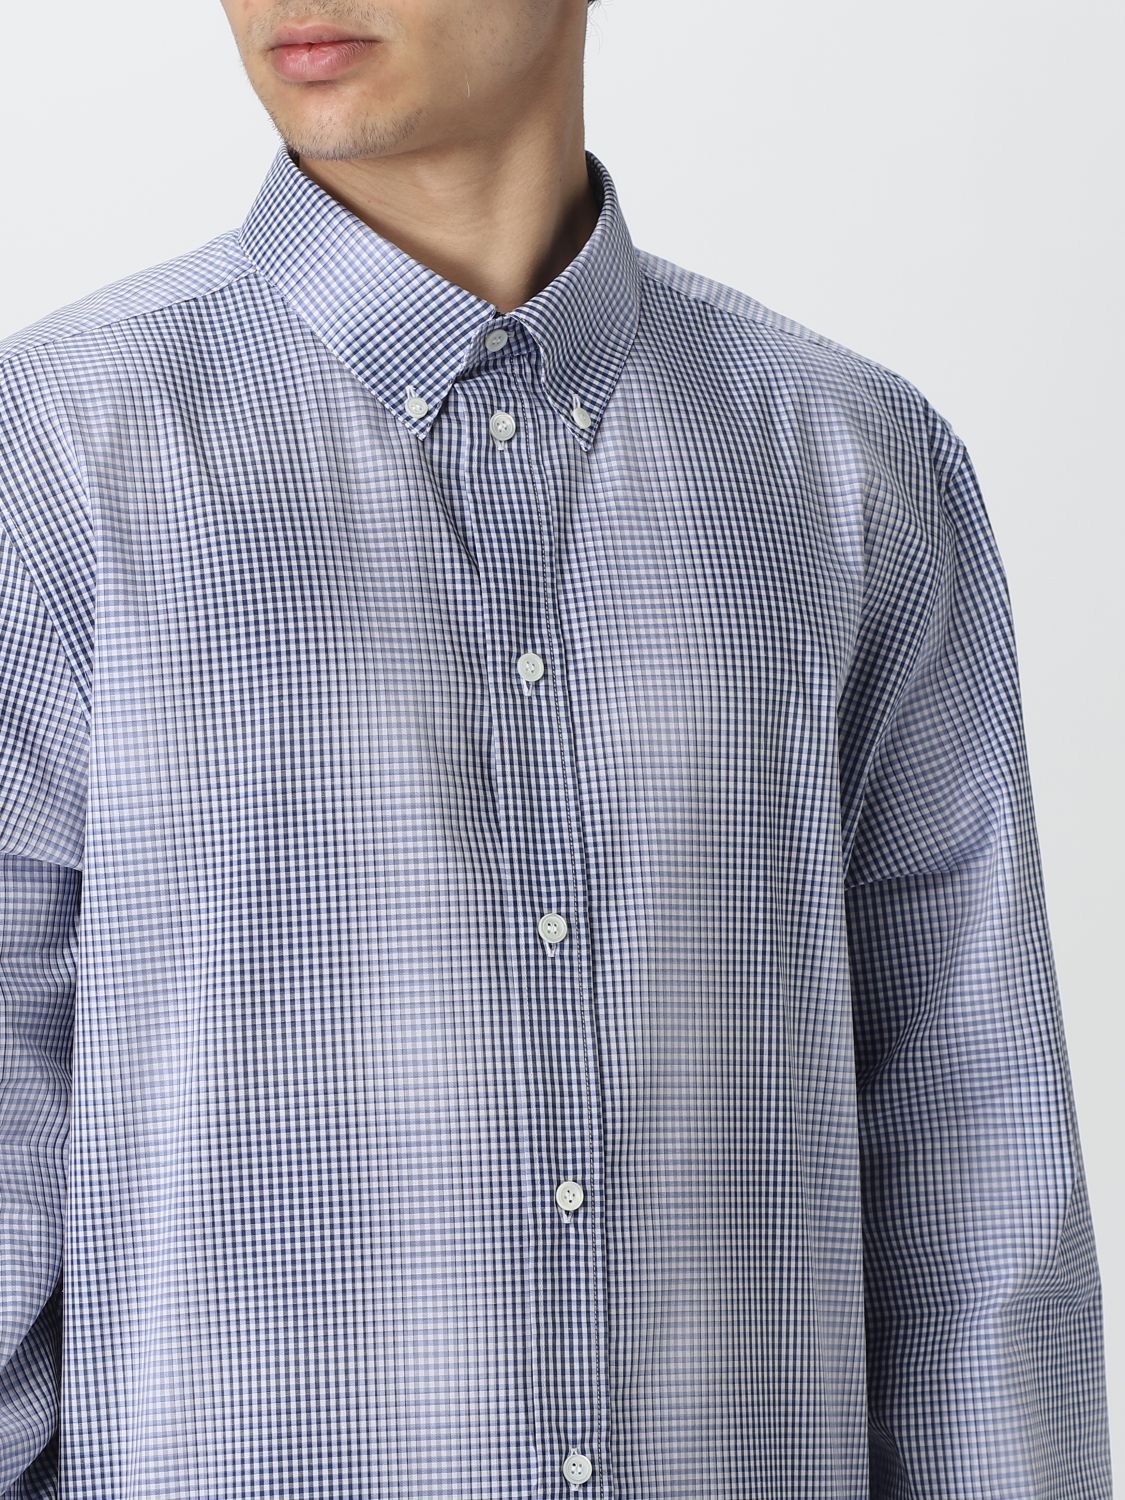 Shirt Loewe: Loewe shirt for man blue 5